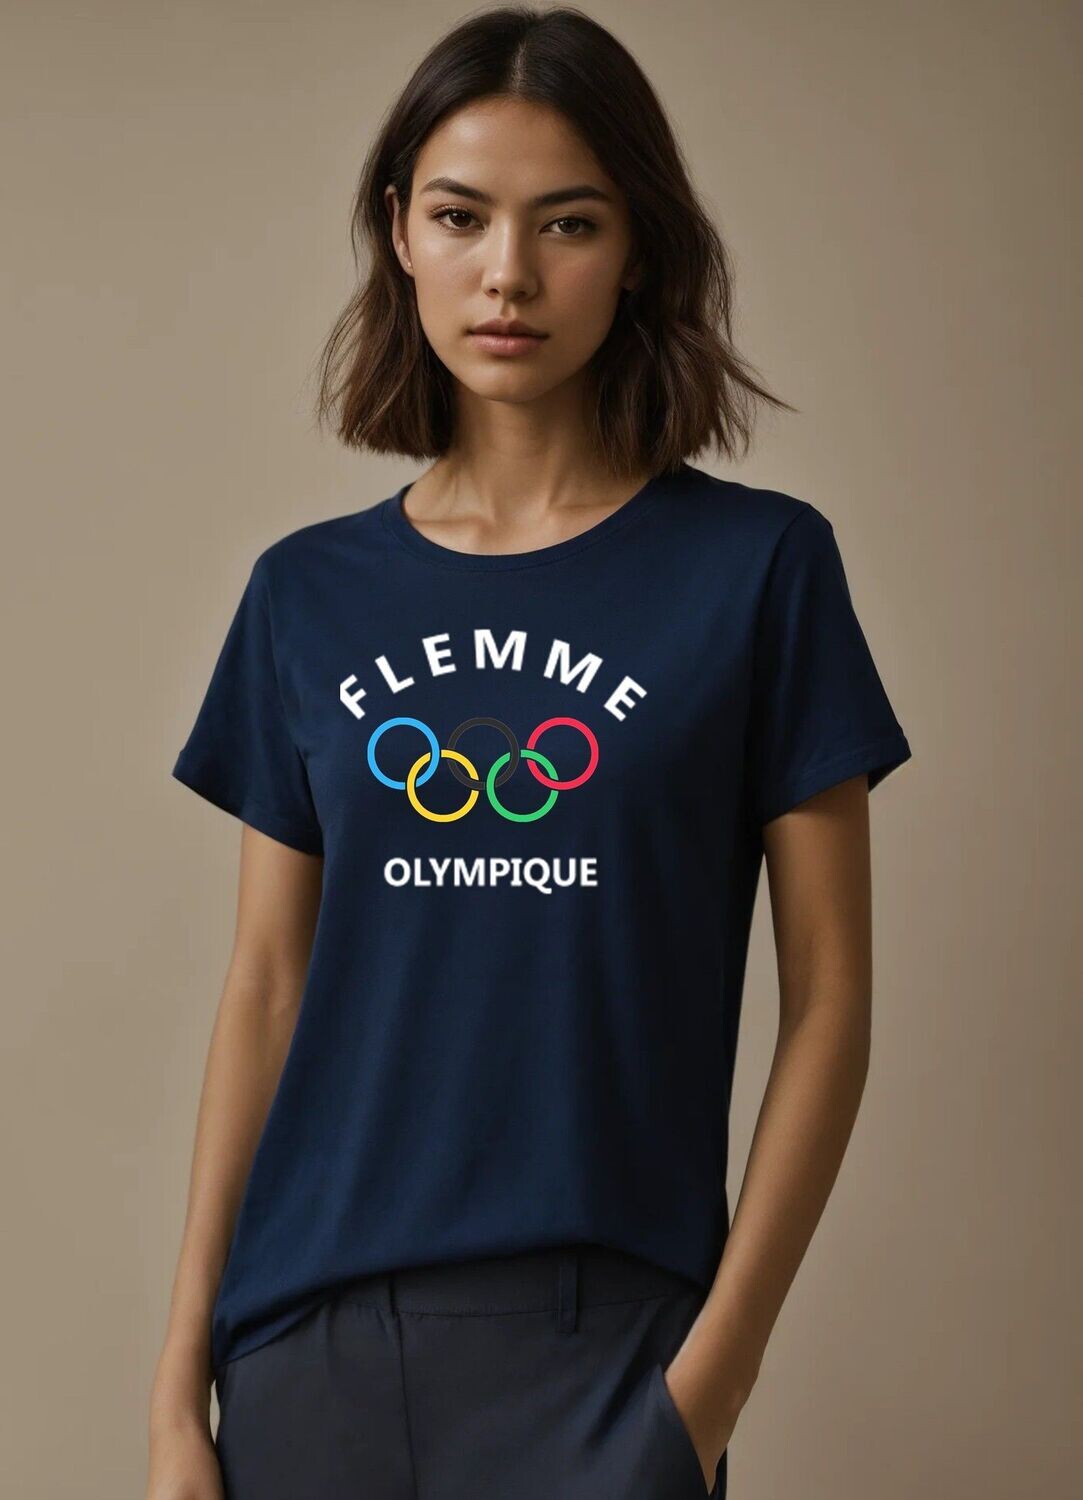 Flemme olympique